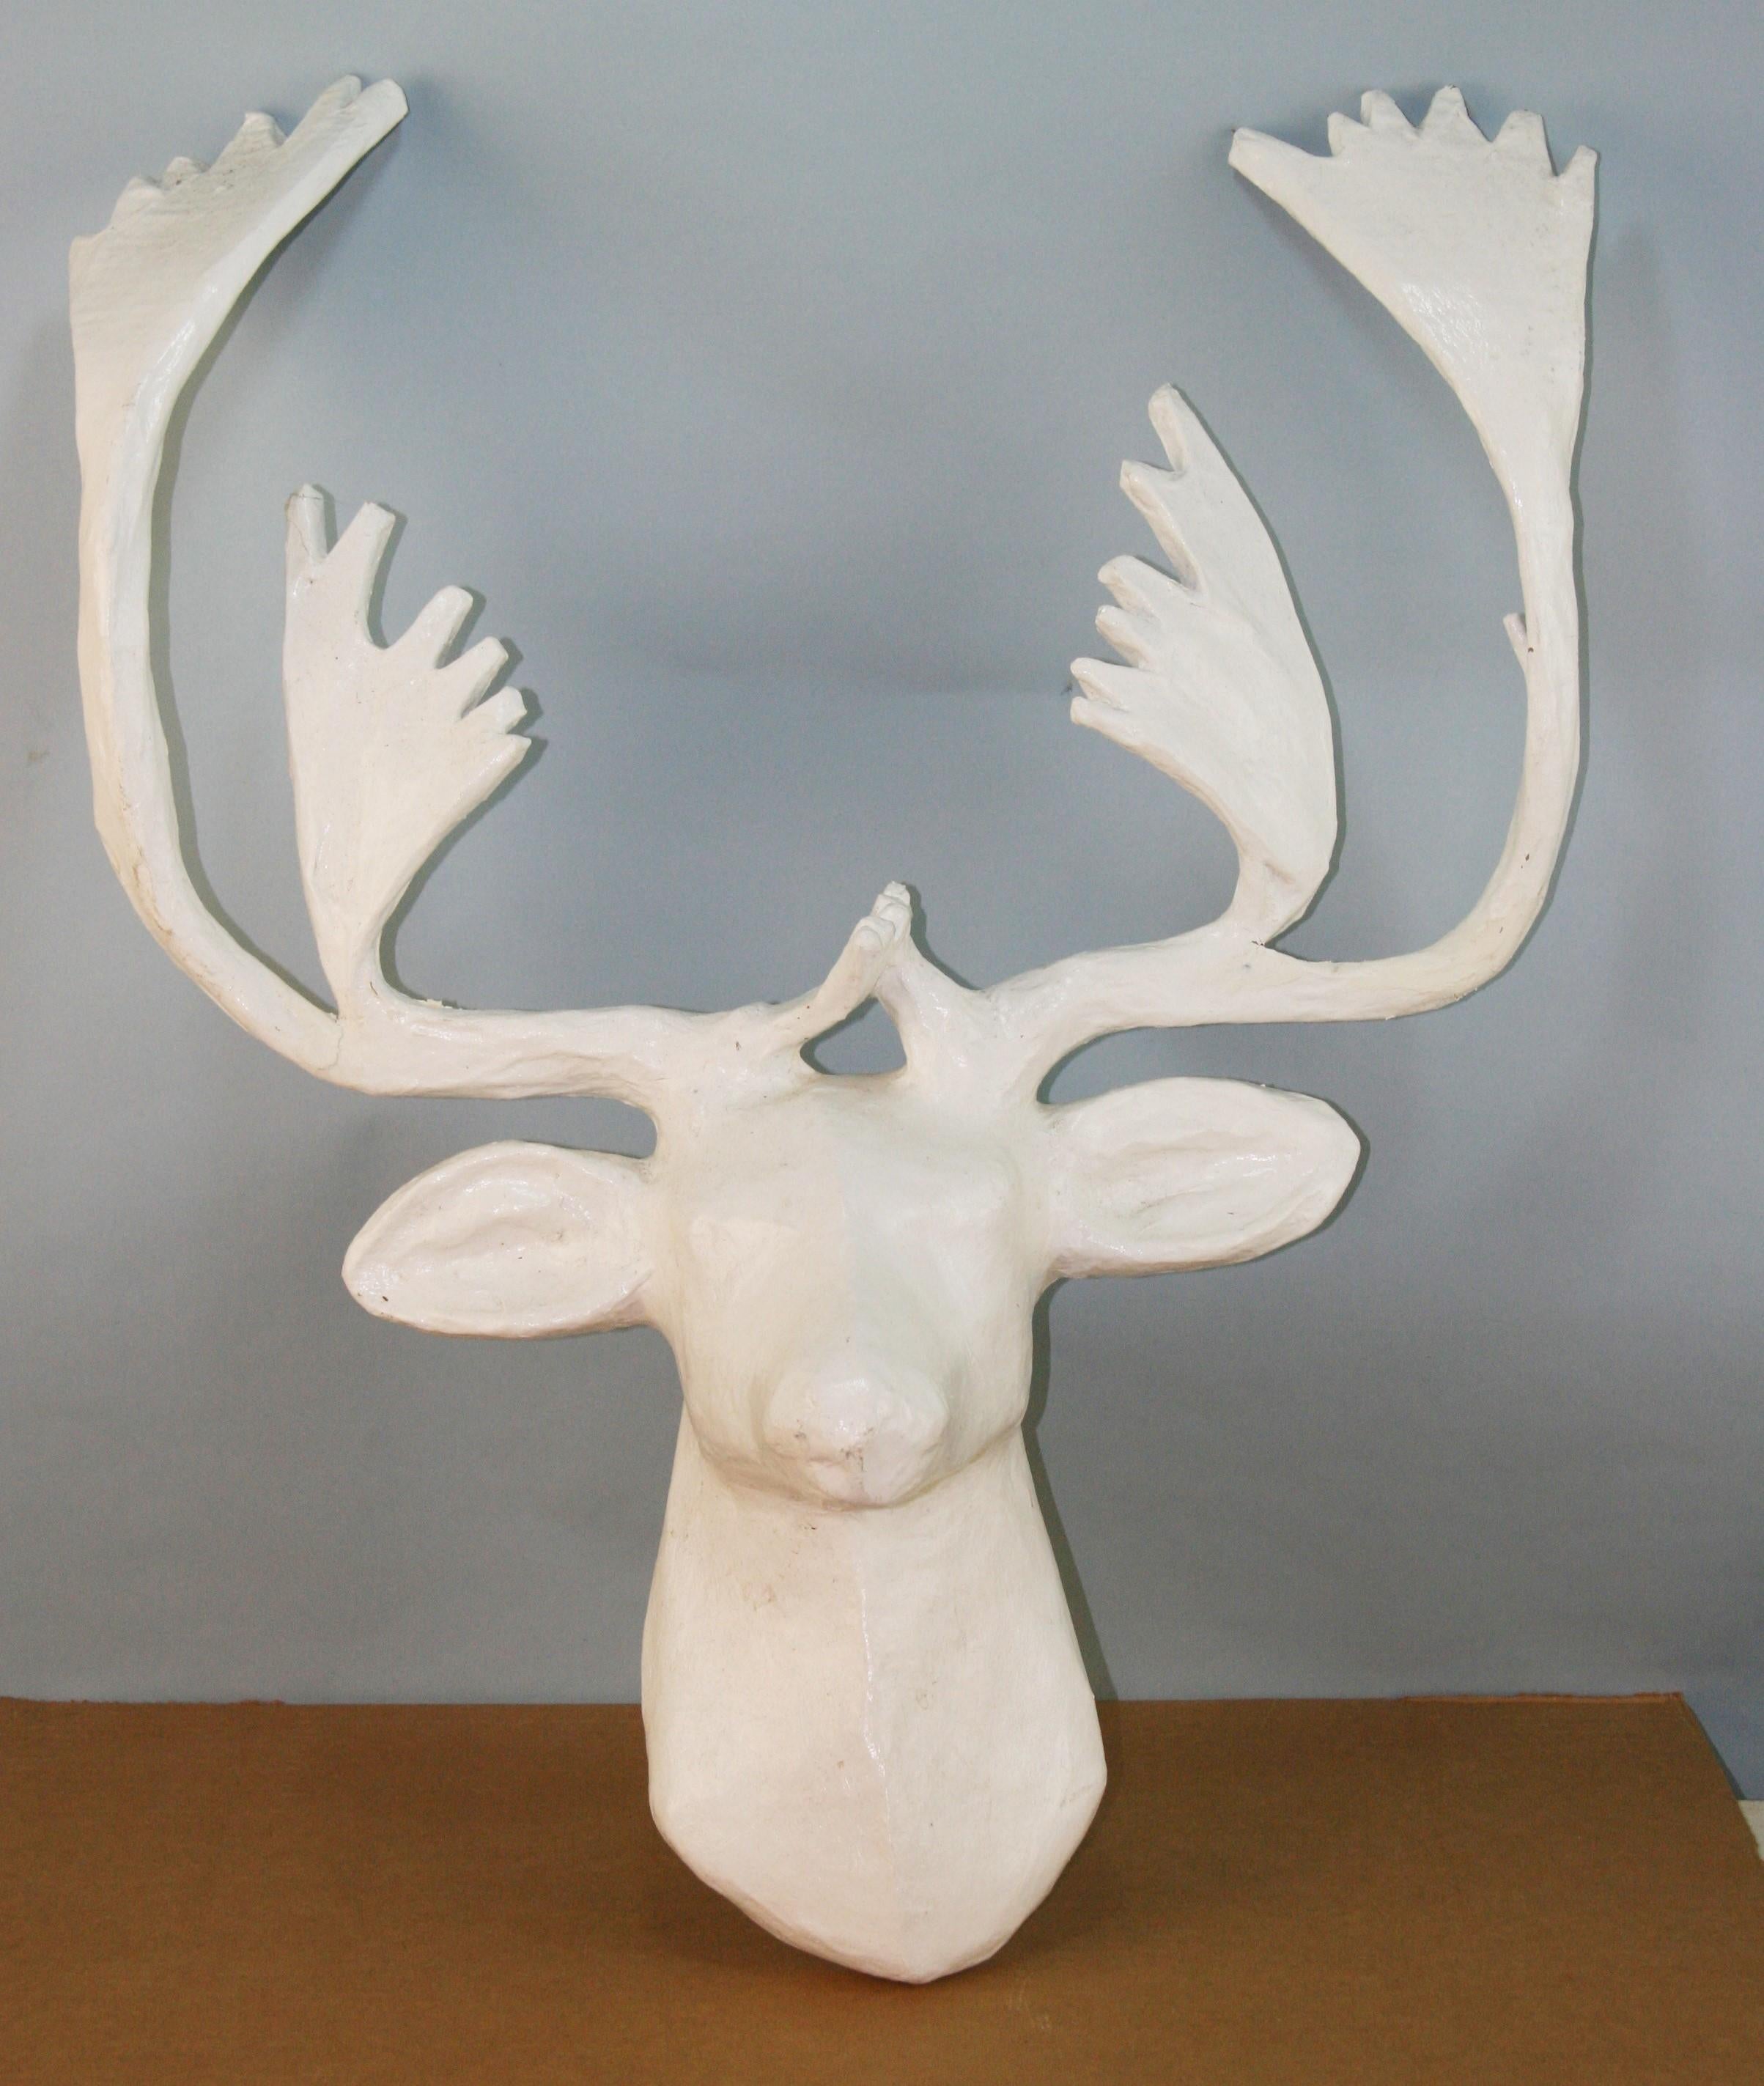 Artist made paper mache deer sculpture.